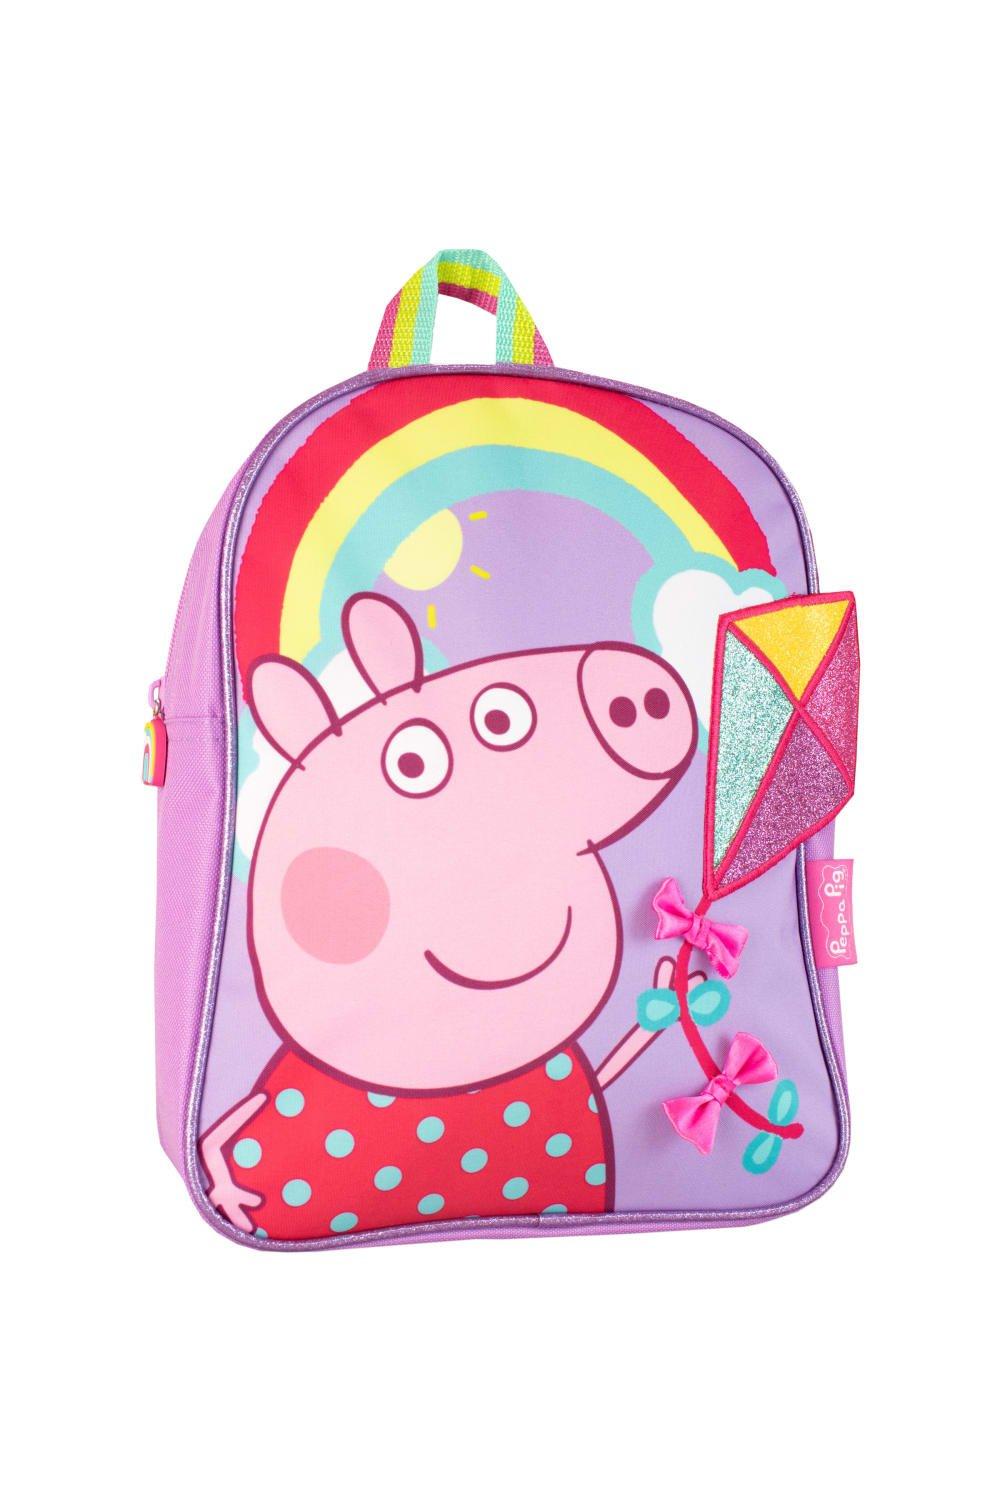 Детский рюкзак Peppa Pig, фиолетовый подарочный канцелярский набор свинка пеппа pgia ua1 set1 33 x 26 x 6 см